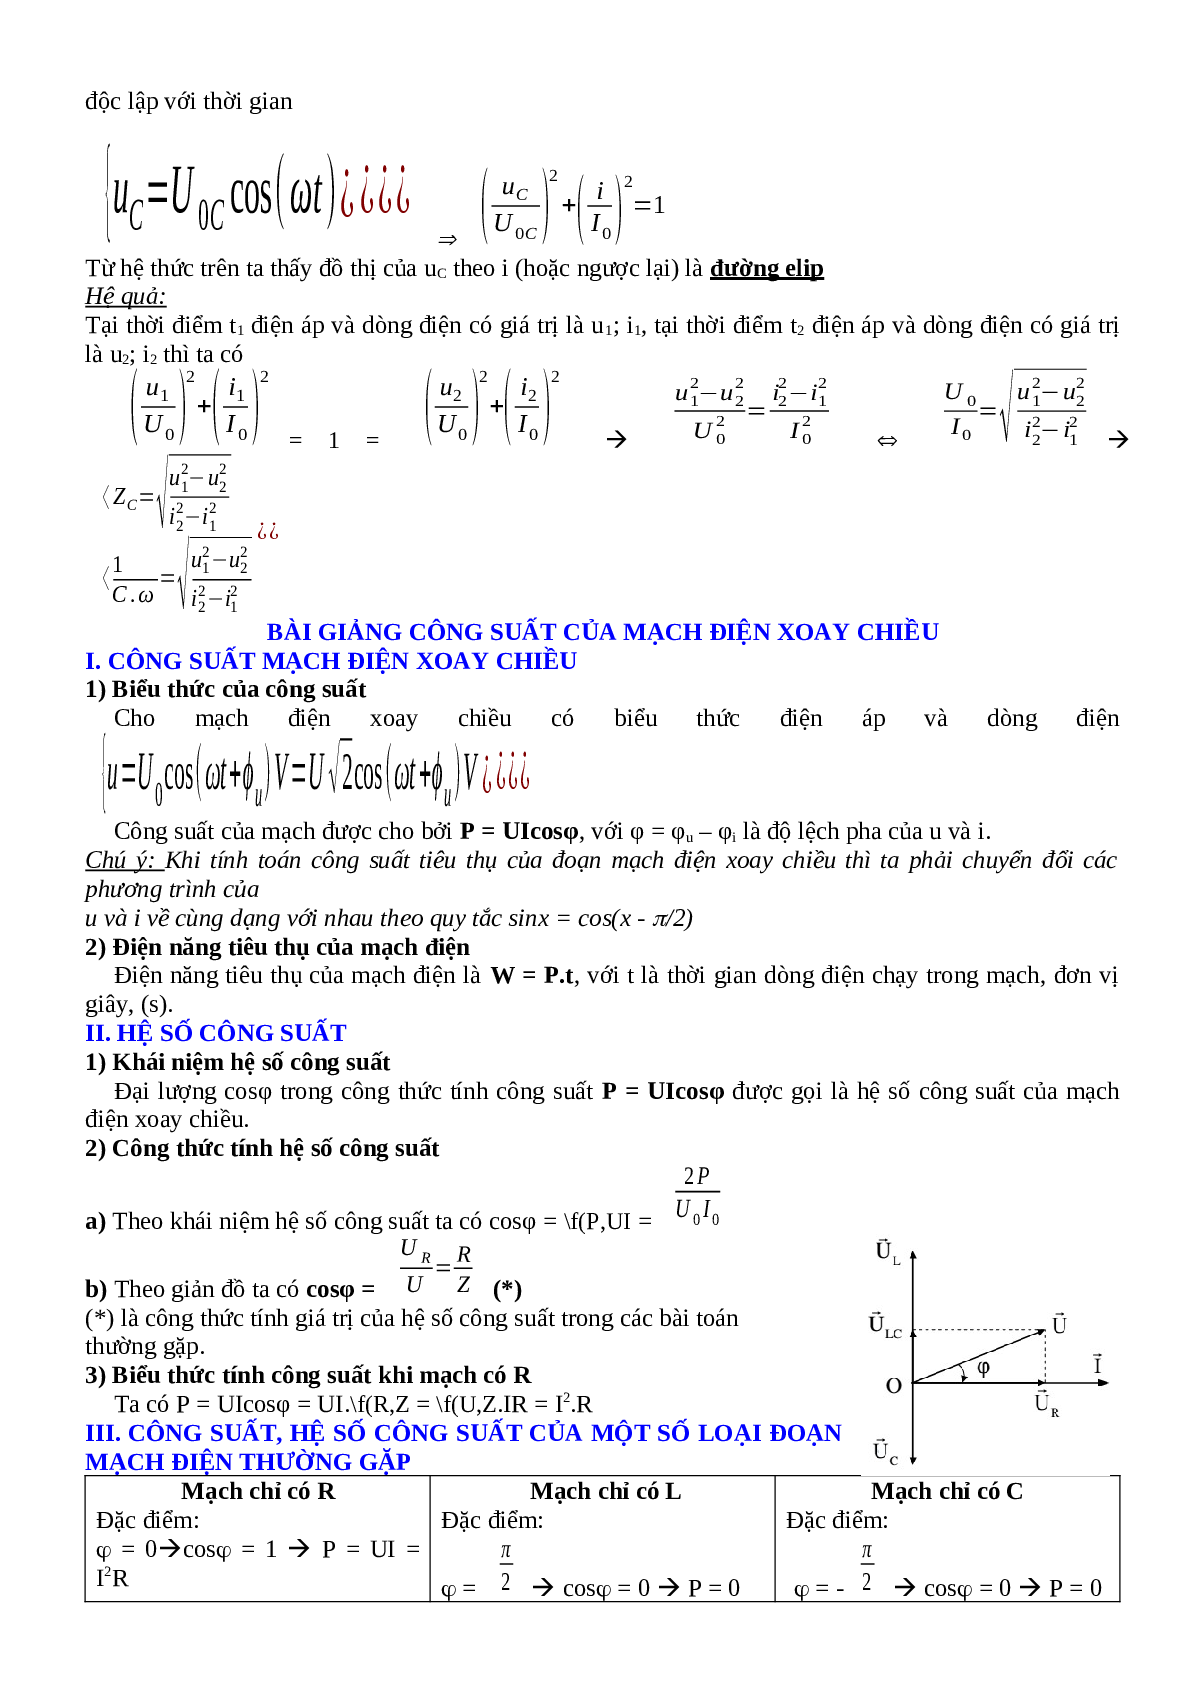 Lý thuyết, bài tập về Điện xoay chiều hay nhất - Vật lí 12 (trang 7)